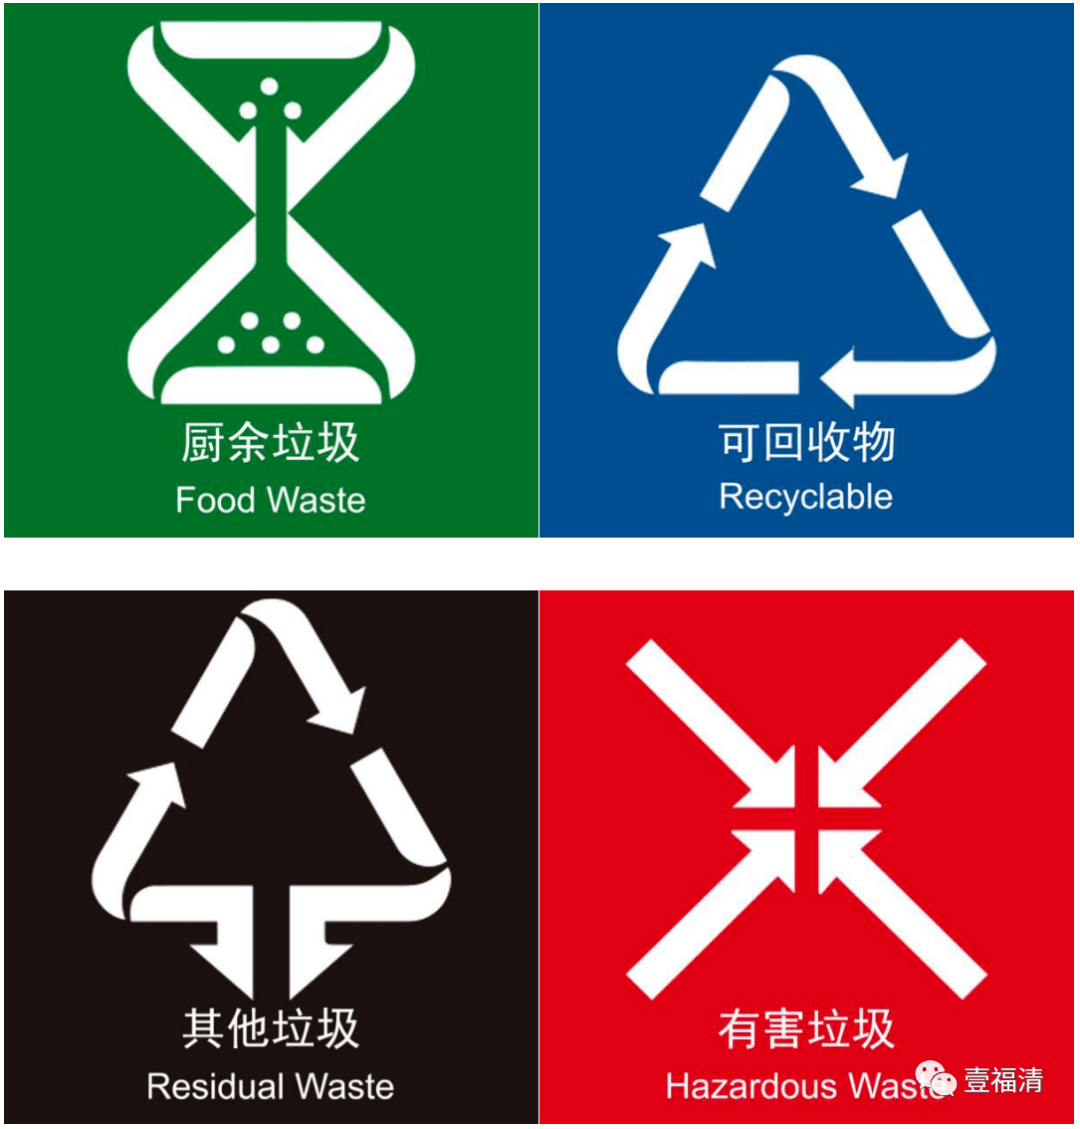 其他垃圾的标志四种图片